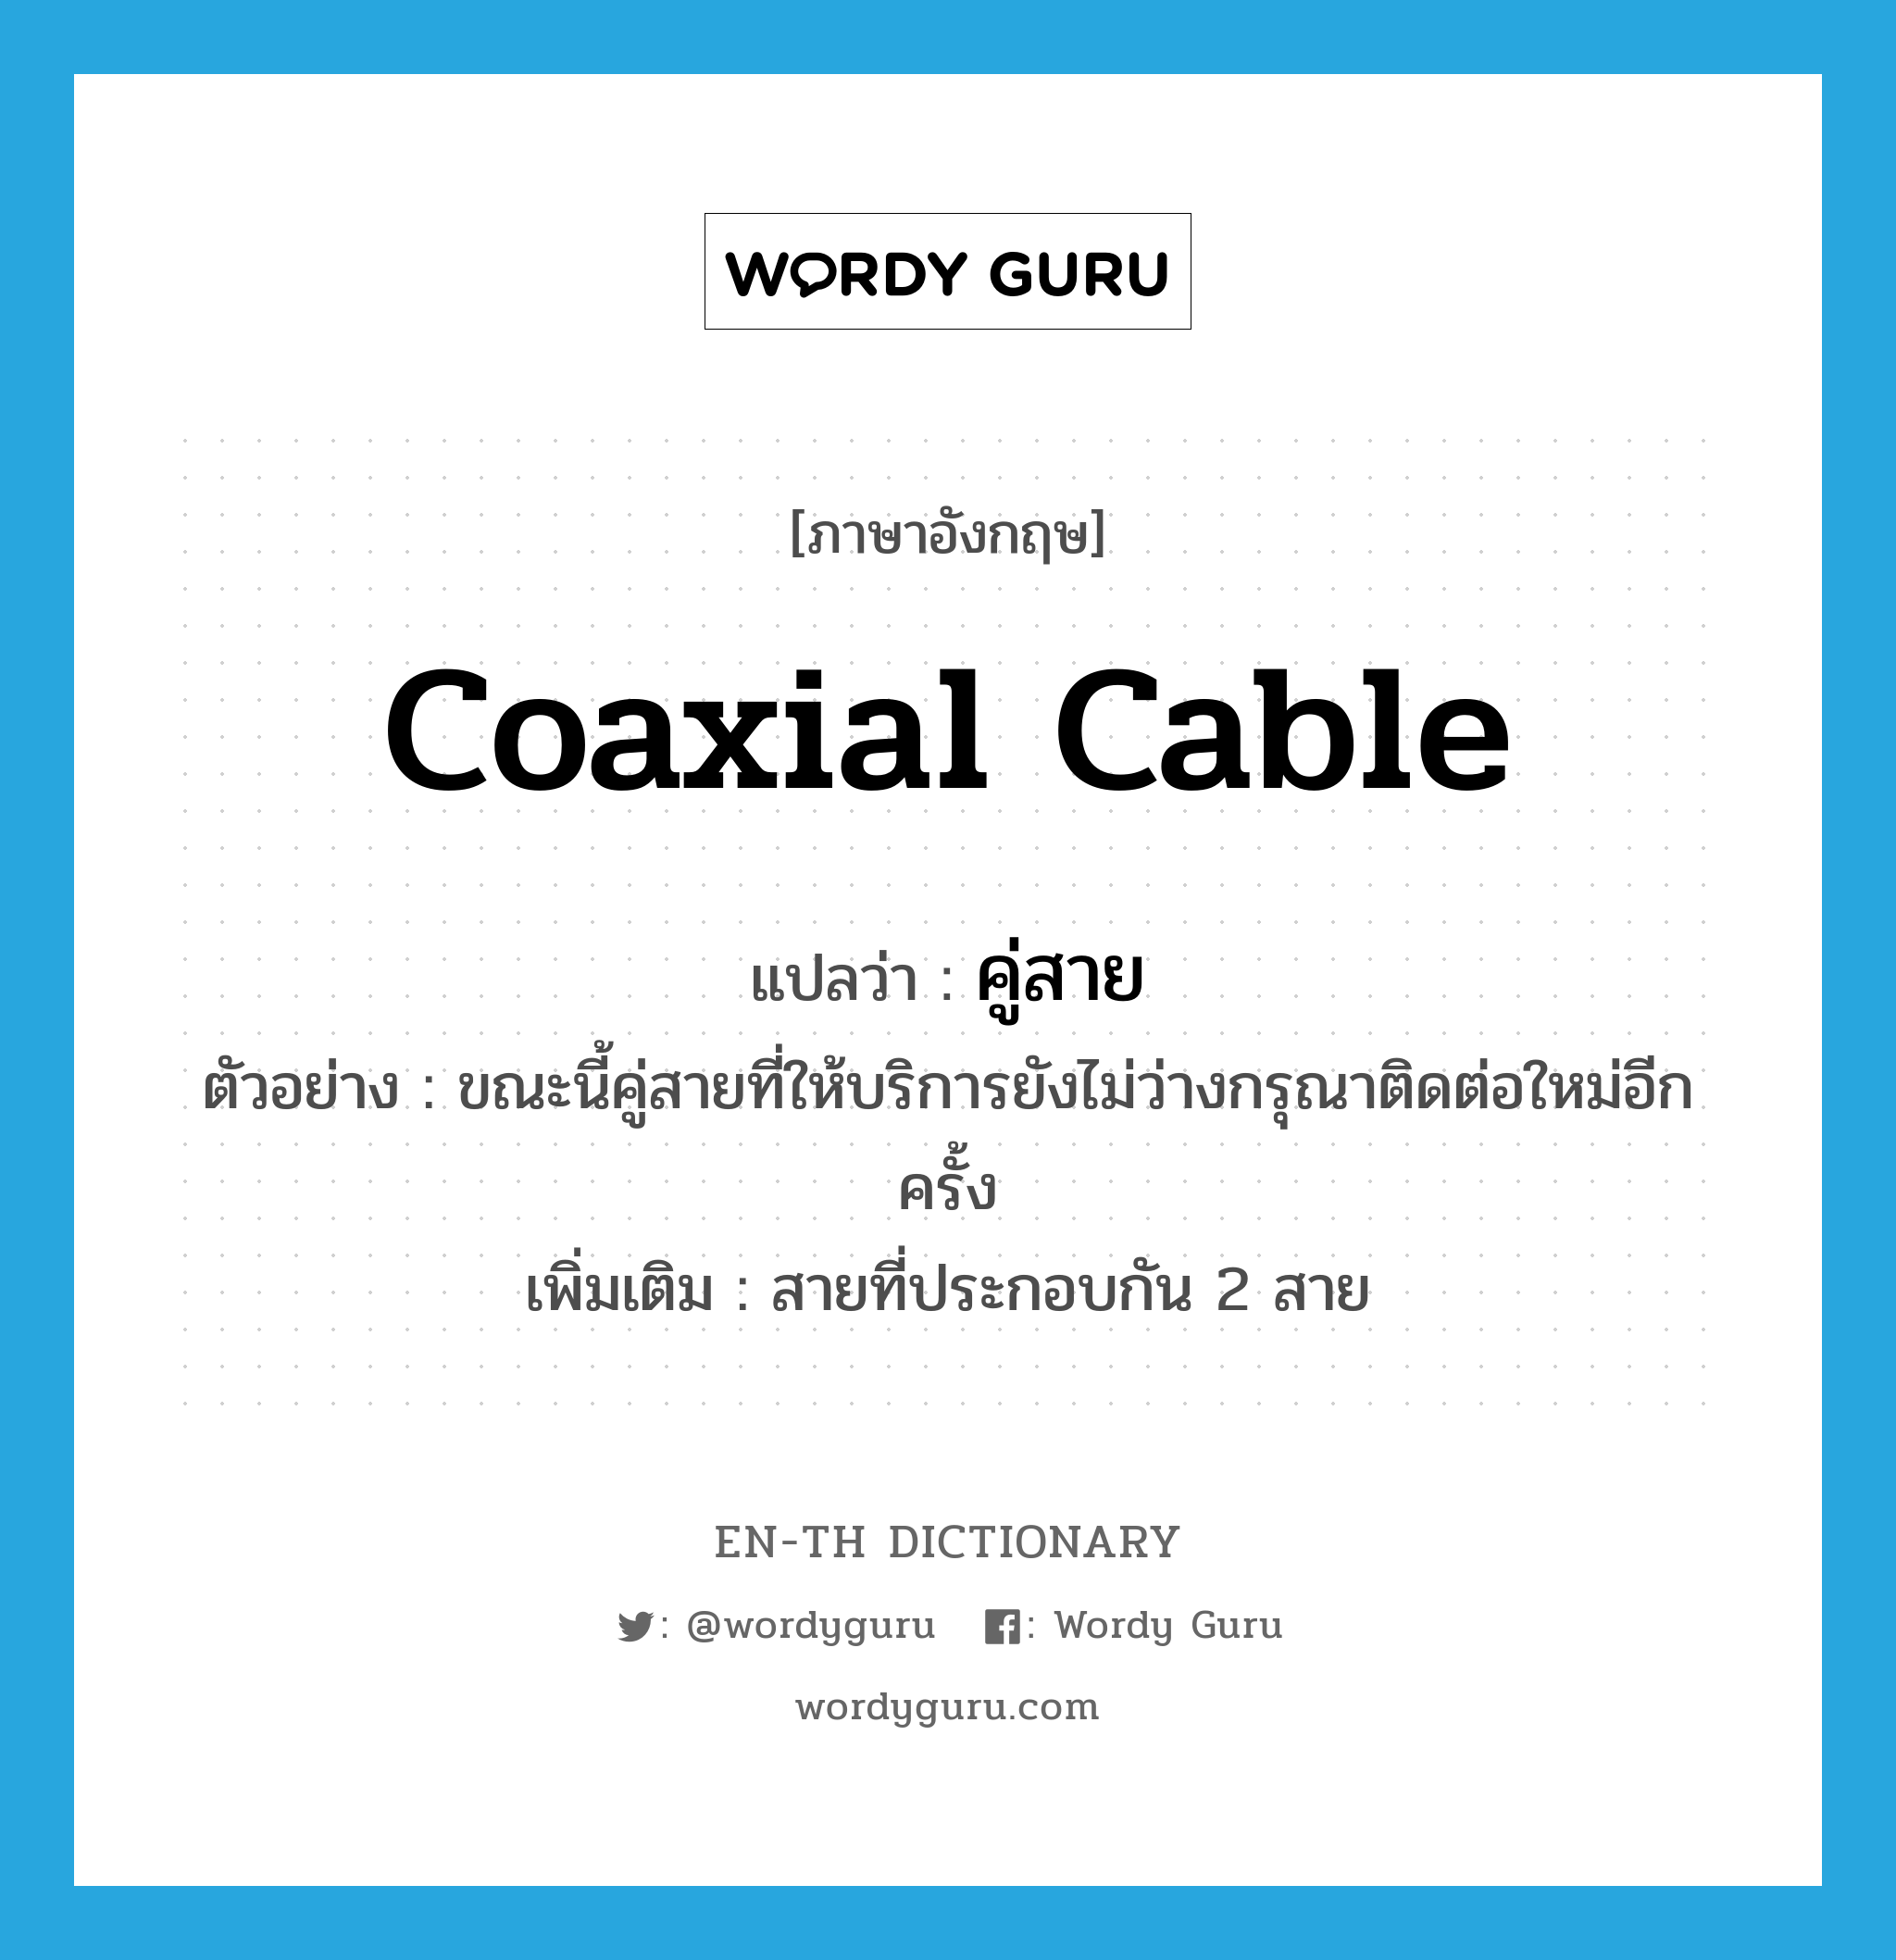 coaxial cable แปลว่า?, คำศัพท์ภาษาอังกฤษ coaxial cable แปลว่า คู่สาย ประเภท N ตัวอย่าง ขณะนี้คู่สายที่ให้บริการยังไม่ว่างกรุณาติดต่อใหม่อีกครั้ง เพิ่มเติม สายที่ประกอบกัน 2 สาย หมวด N